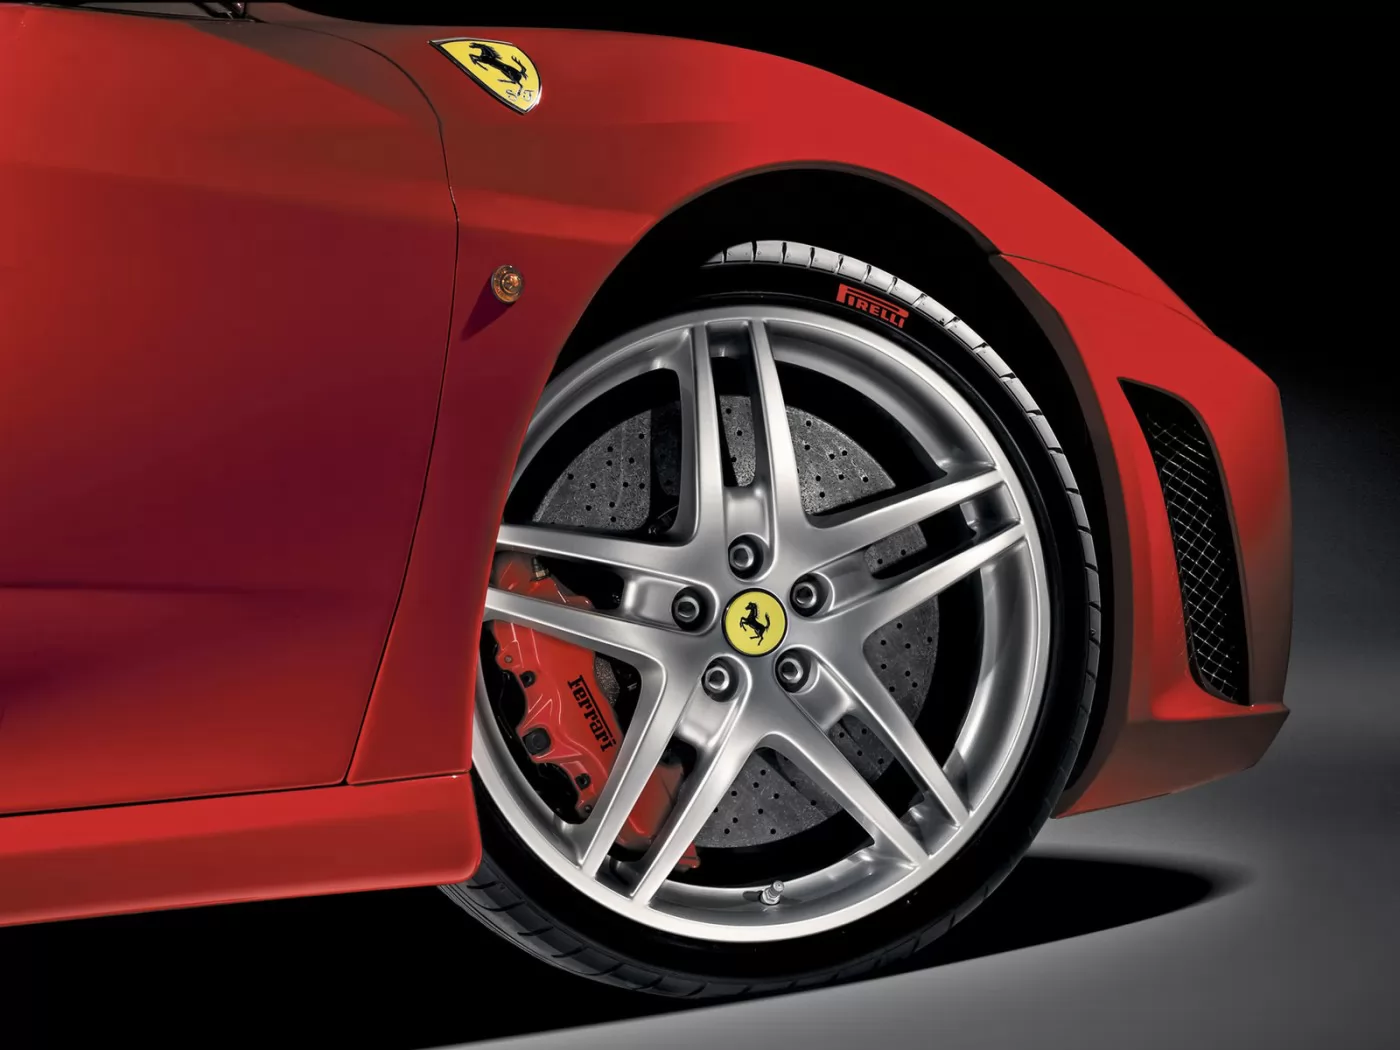 Правое крыло Ferrari F430, Ferrari, автомобили, колесо, красное, техника х